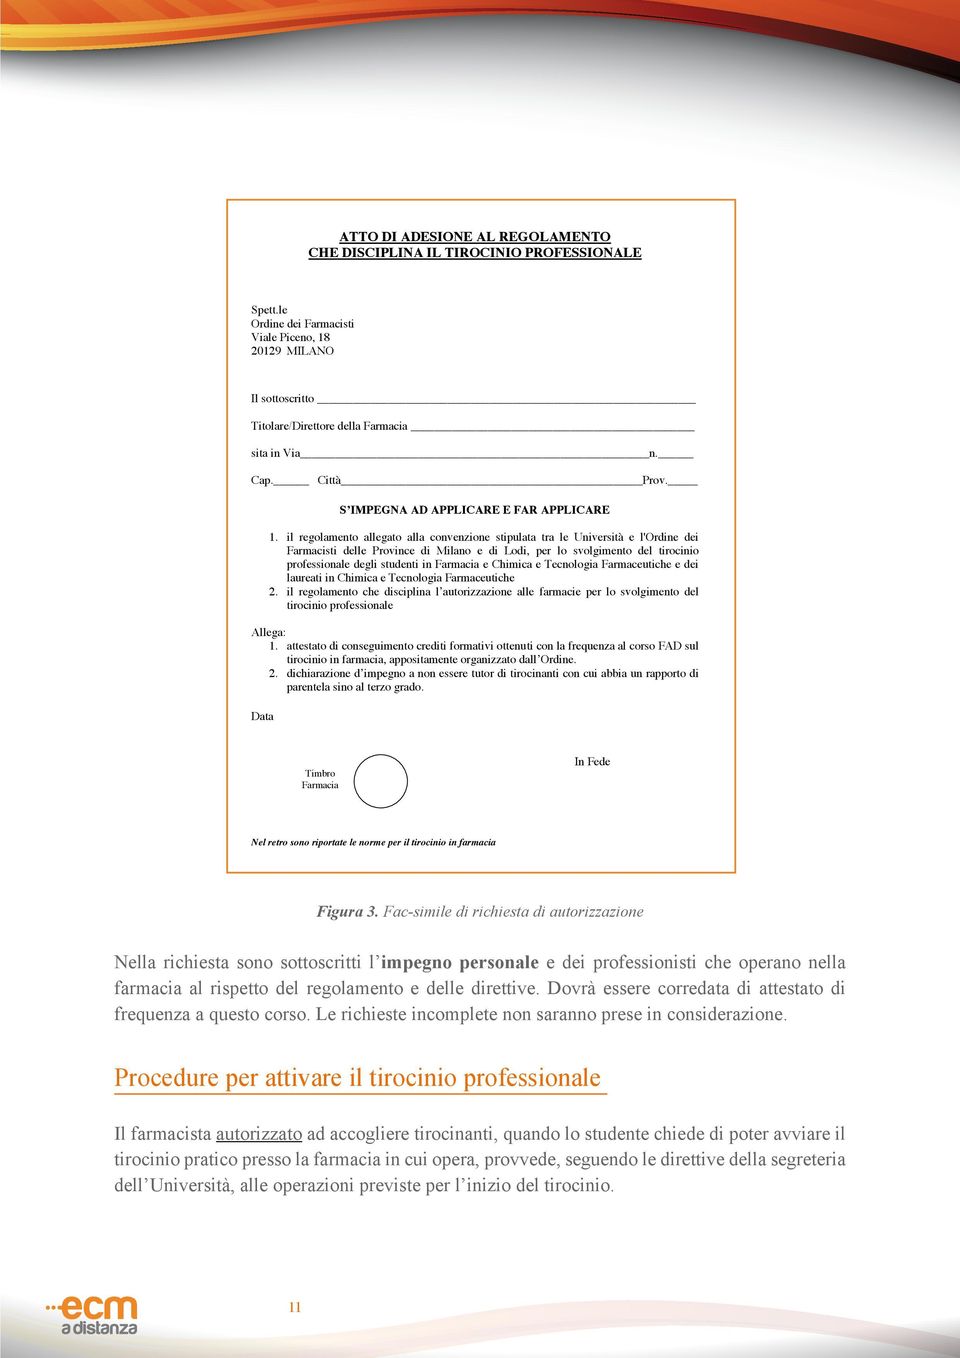 il regolamento allegato alla convenzione stipulata tra le Università e l'ordine dei Farmacisti delle Province di Milano e di Lodi, per lo svolgimento del tirocinio professionale degli studenti in